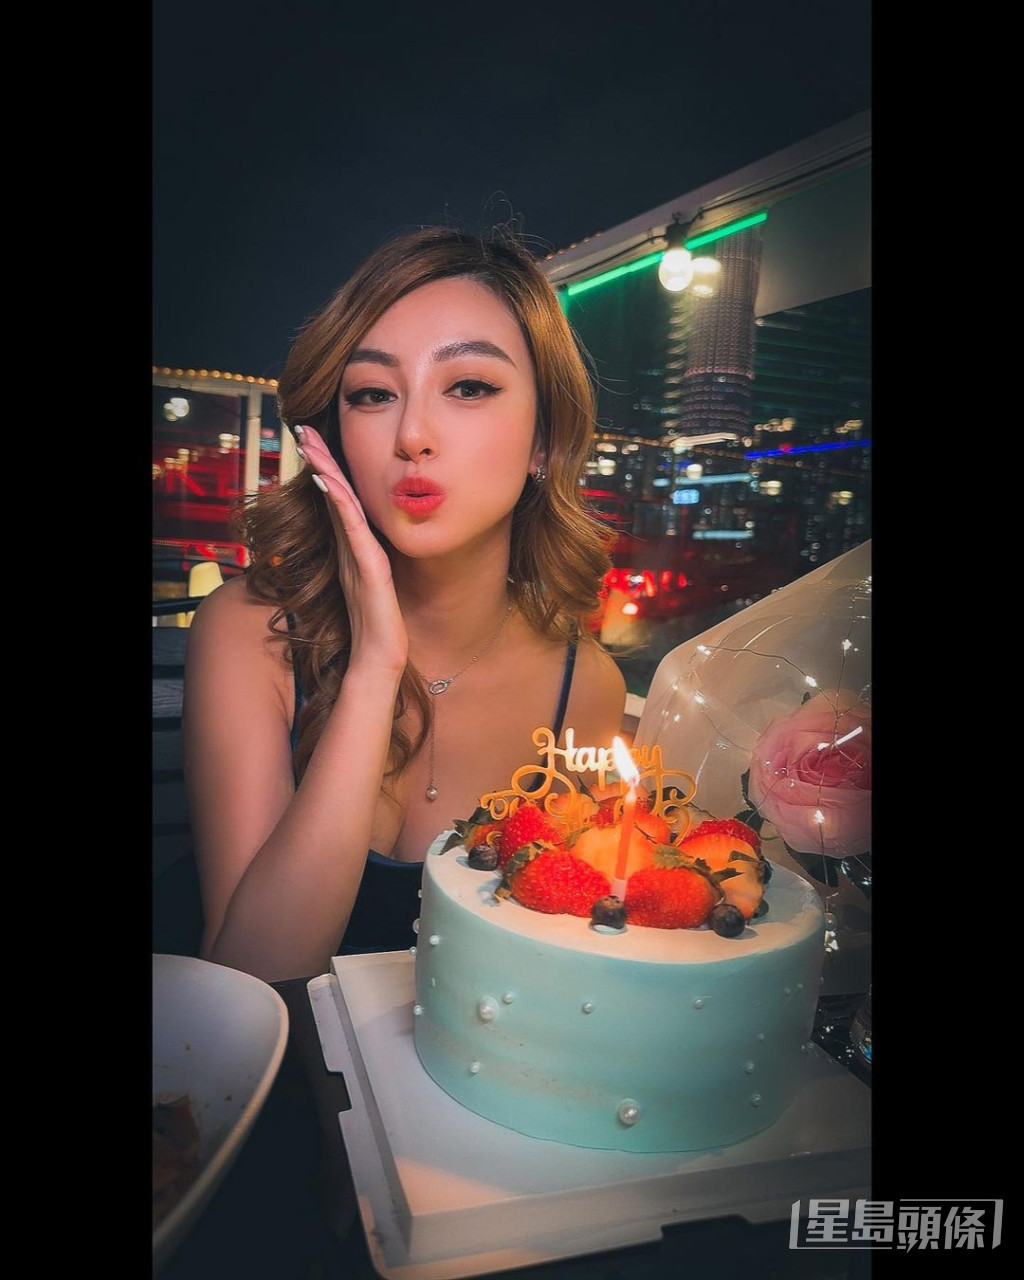 许子萱在今年情人节刚过26岁生日。